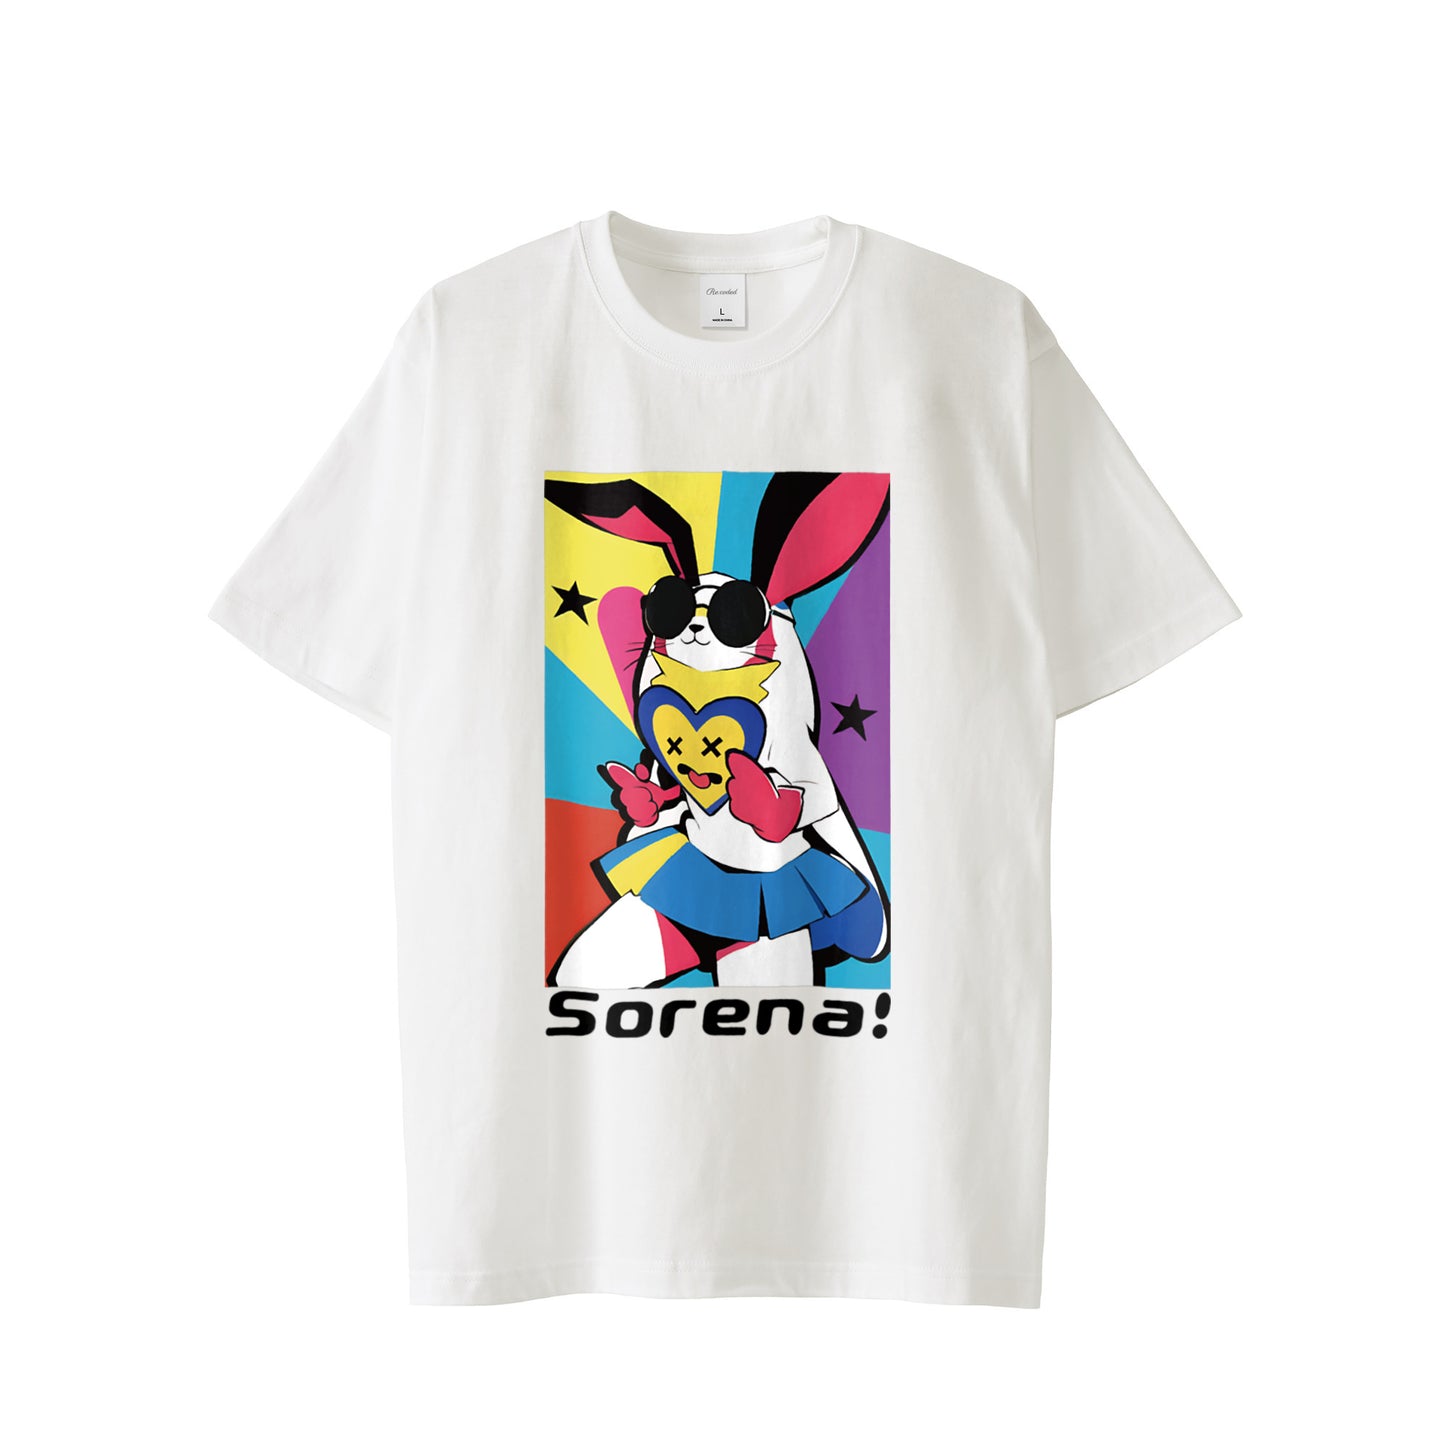 T-shirt white "sorena! ～それな！01"